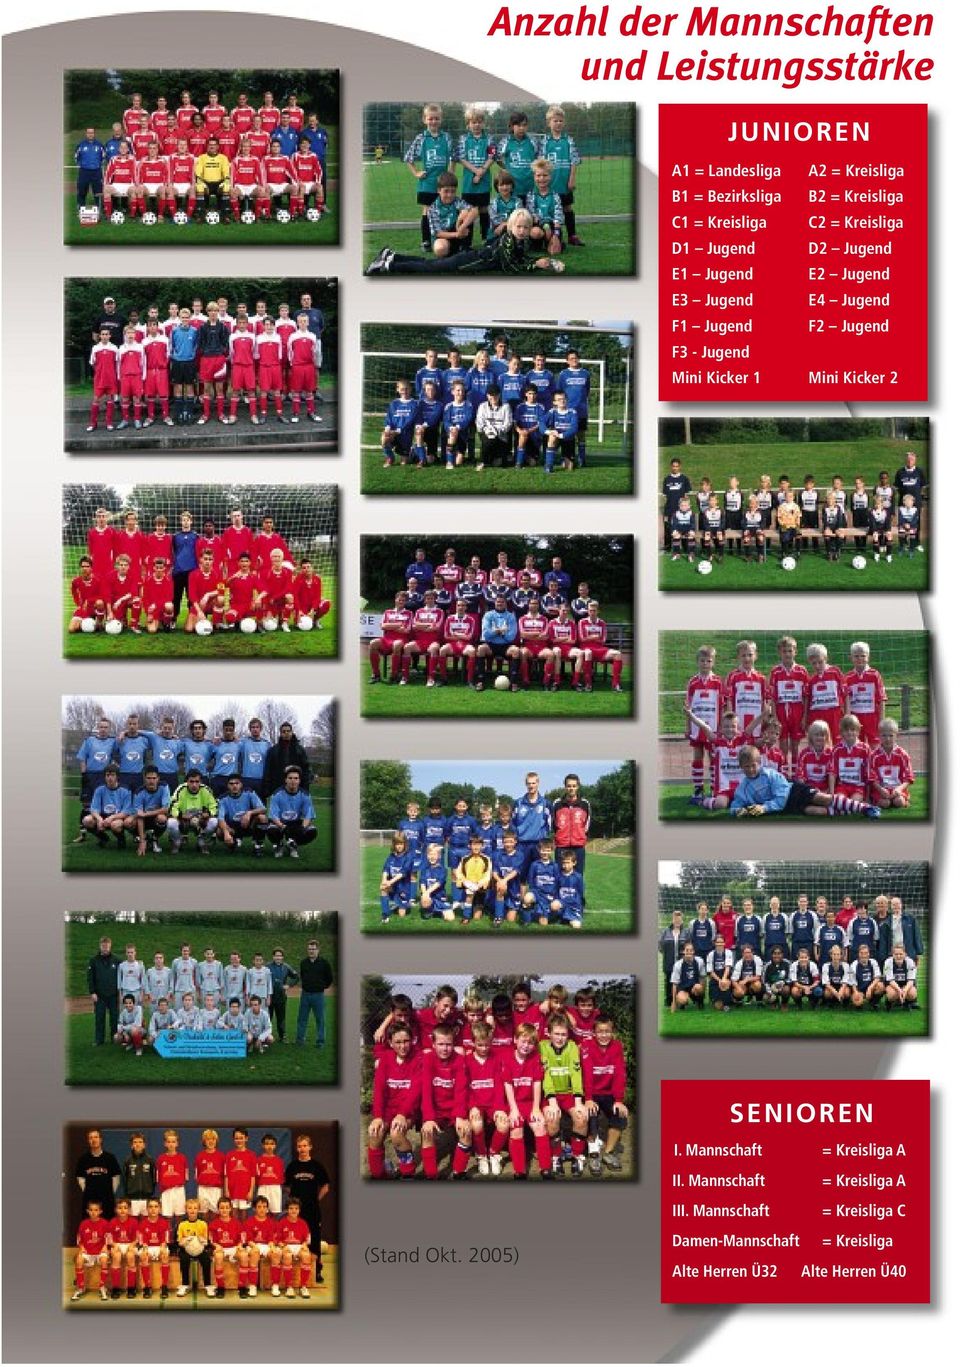 Jugend E4 Jugend F2 Jugend Mini Kicker 1 Mini Kicker 2 SENIOREN (Stand Okt. 2005) I.